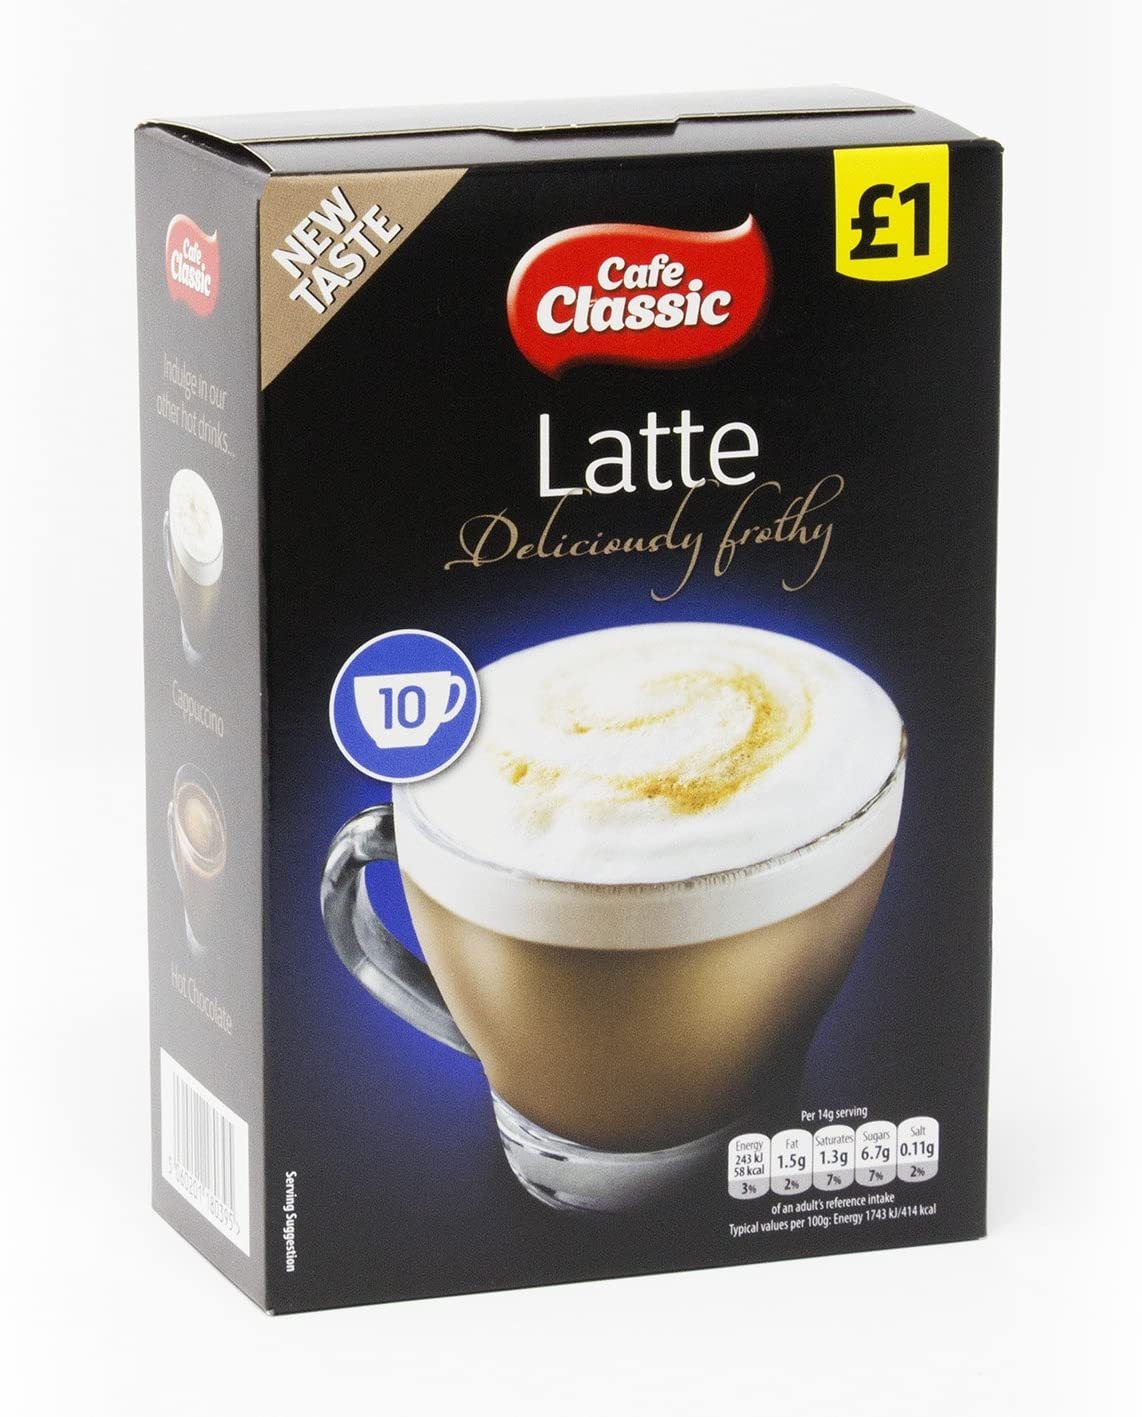 Classic Cafe Latte @ SaveCo Online Ltd